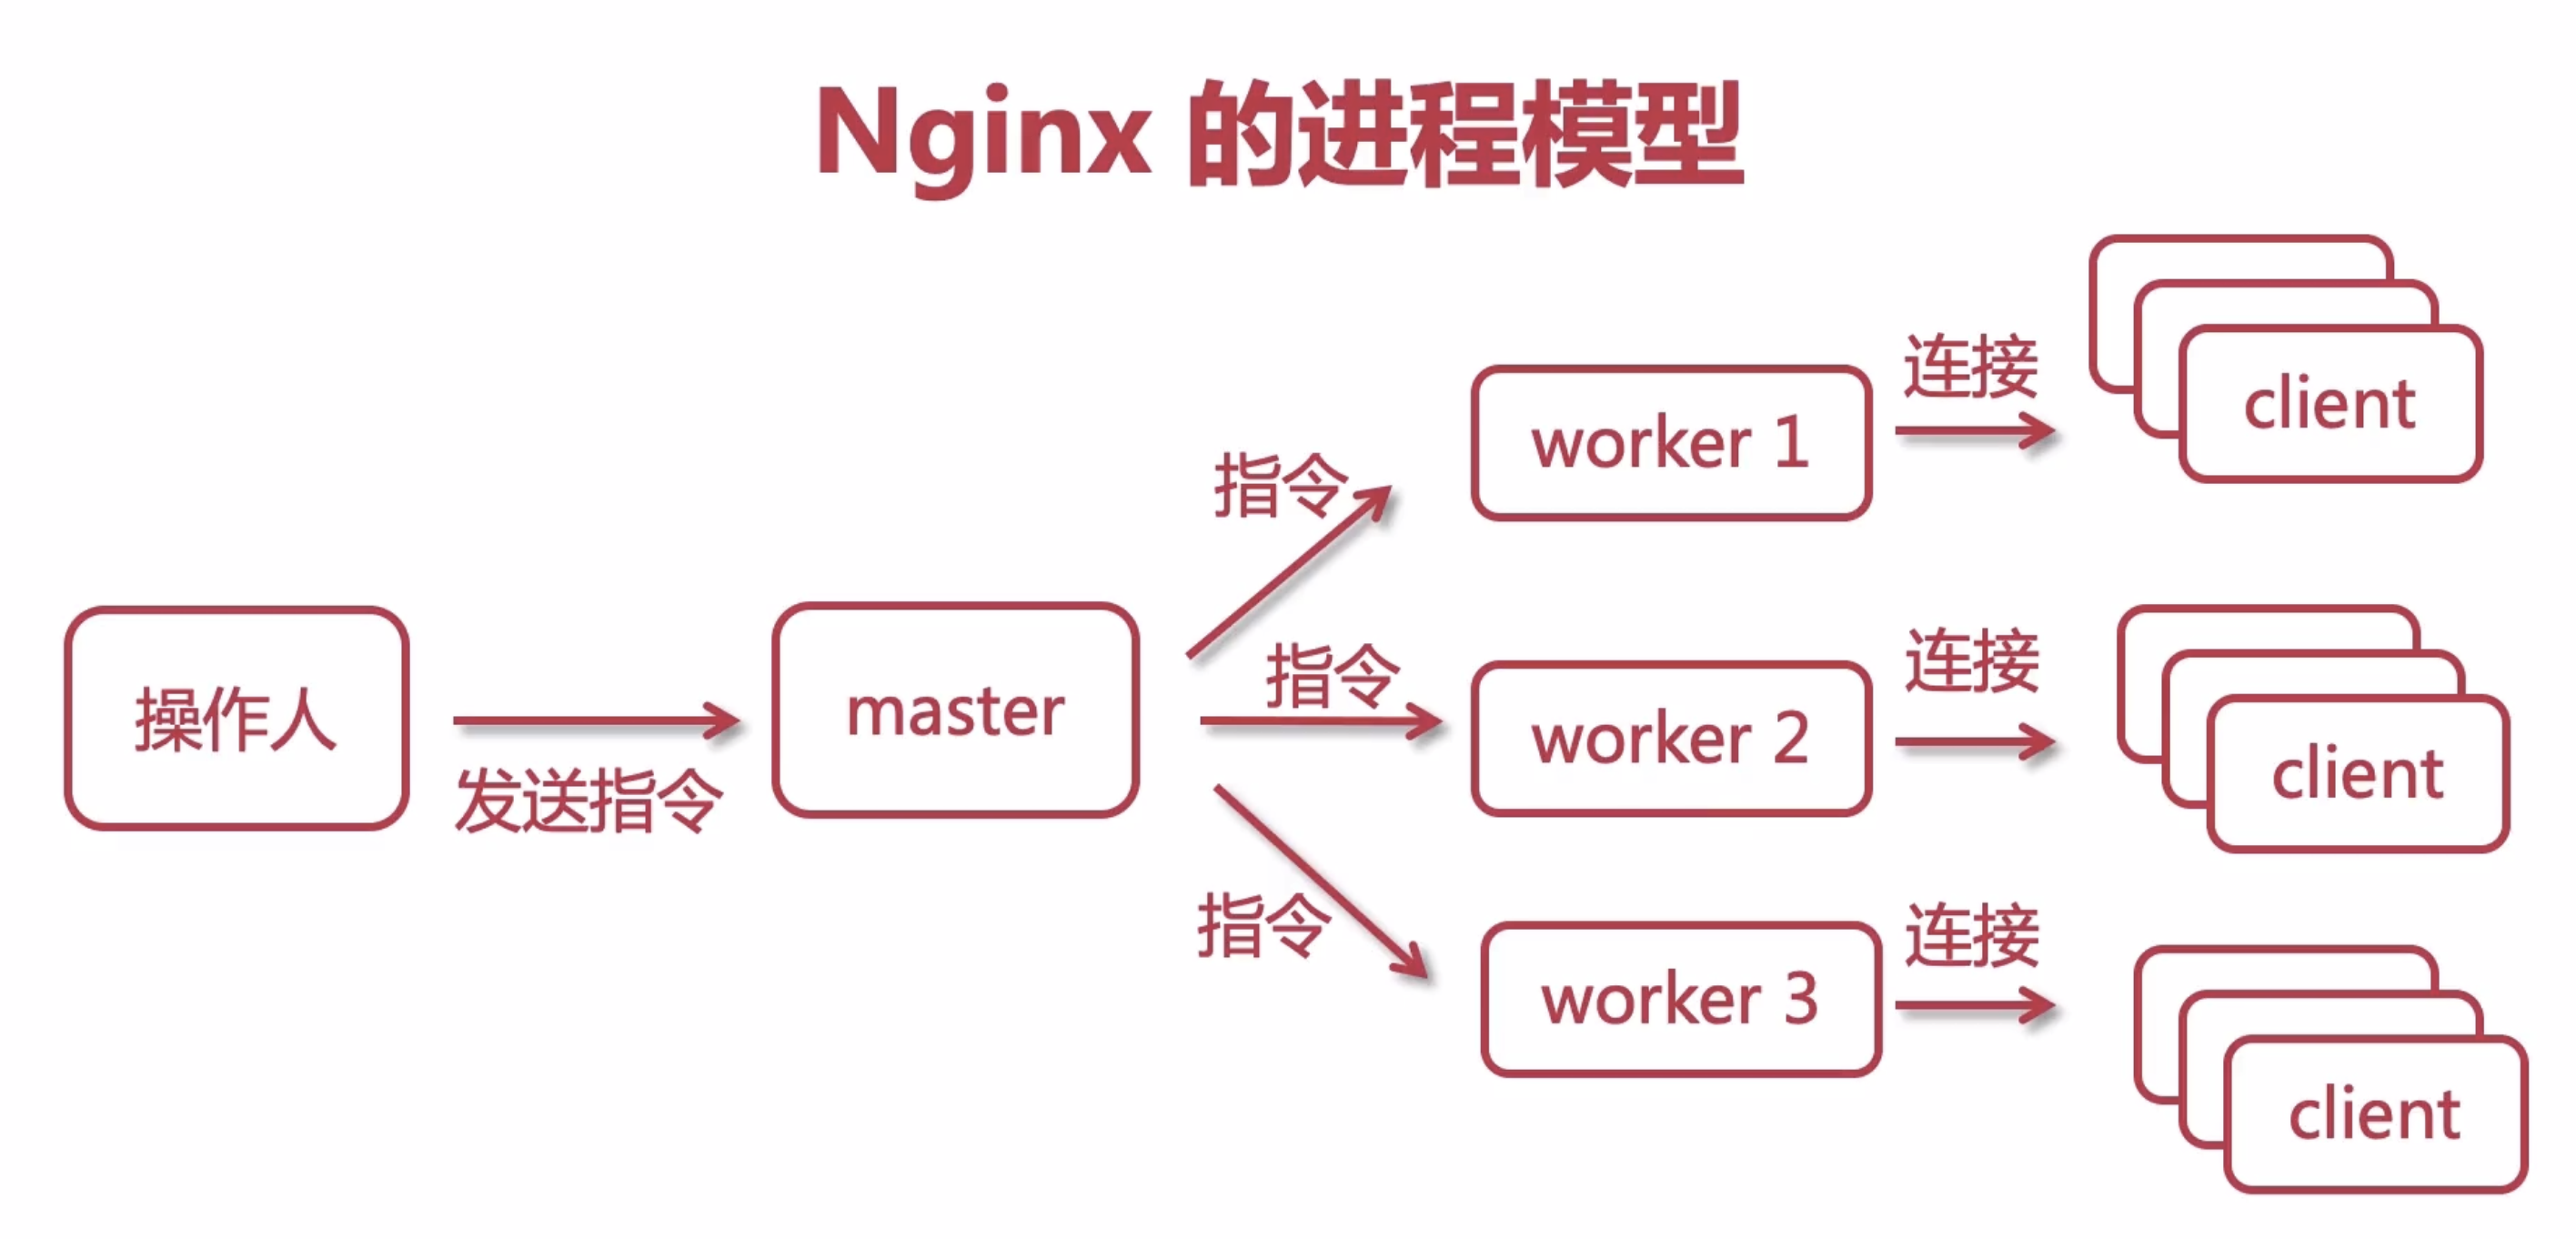 深入浅出学习透析<strong>nginx</strong>服务器的基本原理和配置指南「Keepalive性能分析实战篇」